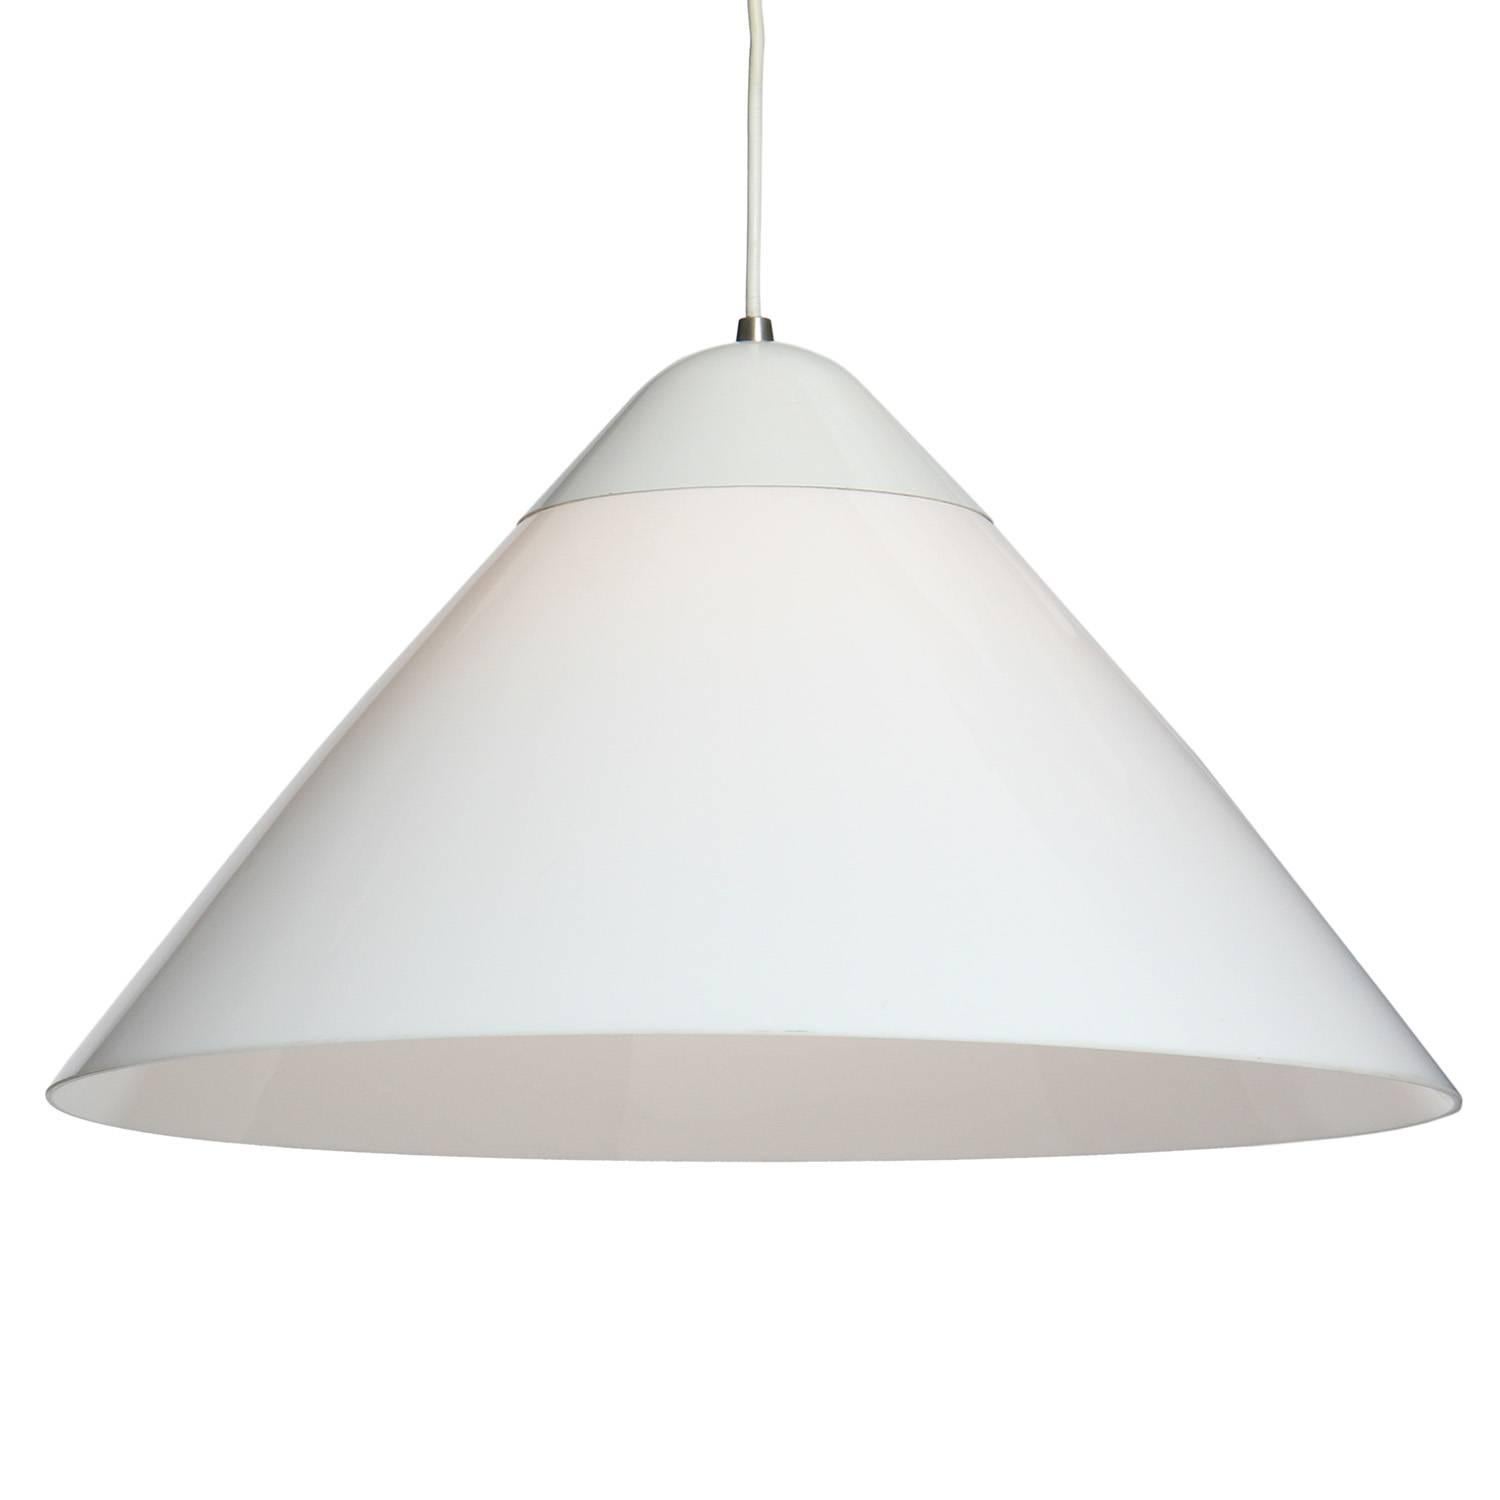 Une lampe suspendue simple et bien dimensionnée, avec un abat-jour en acrylique qui se prolonge par un capuchon en métal blanc.